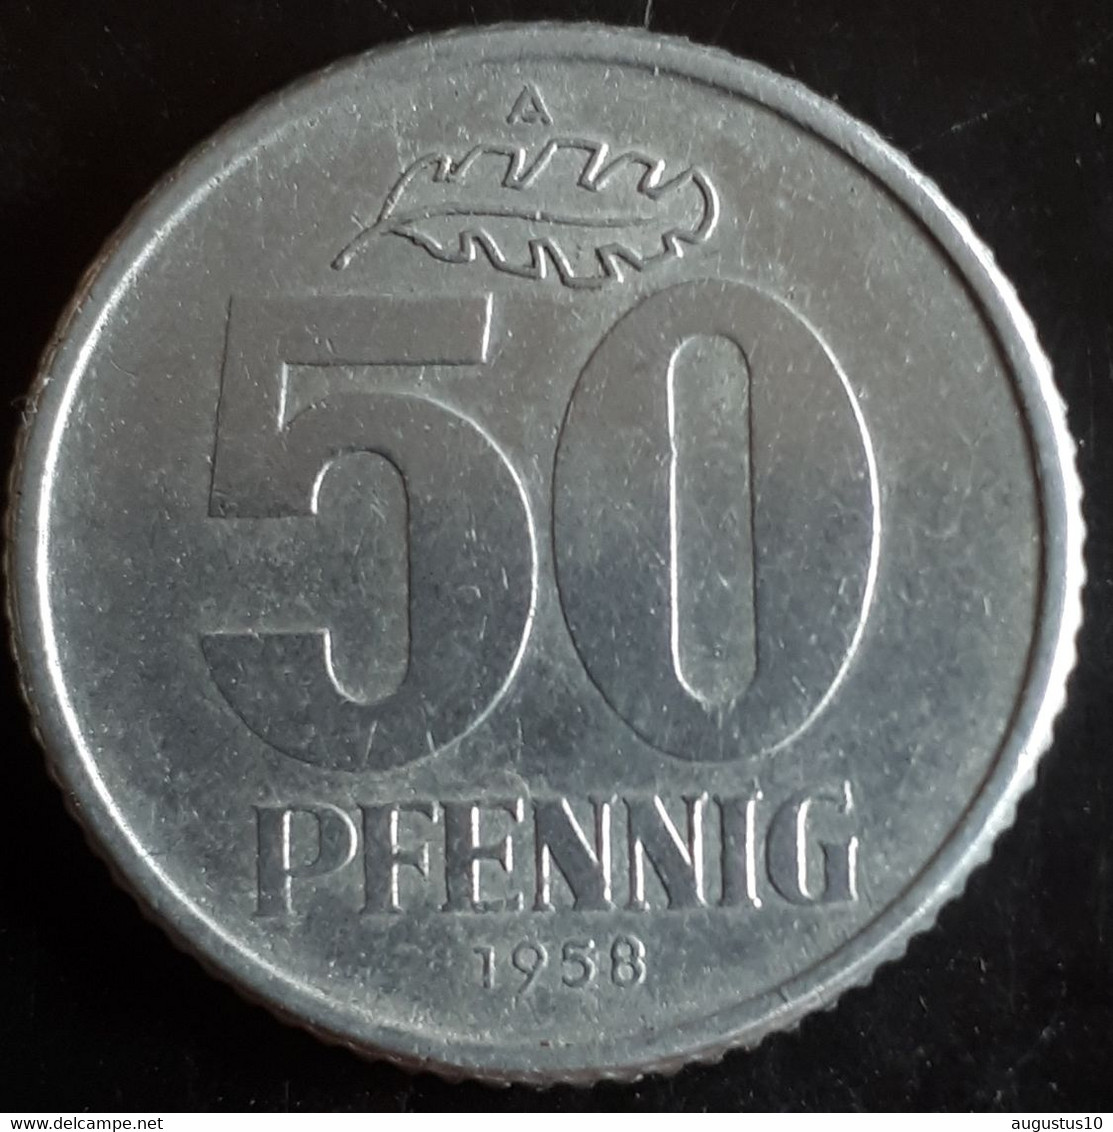 DEUTSCHLAND/D.D.R.: 50 PFENNIG 1958 A KM 12.1 ONE YEAR TYPE SUP/UNC - 50 Pfennig